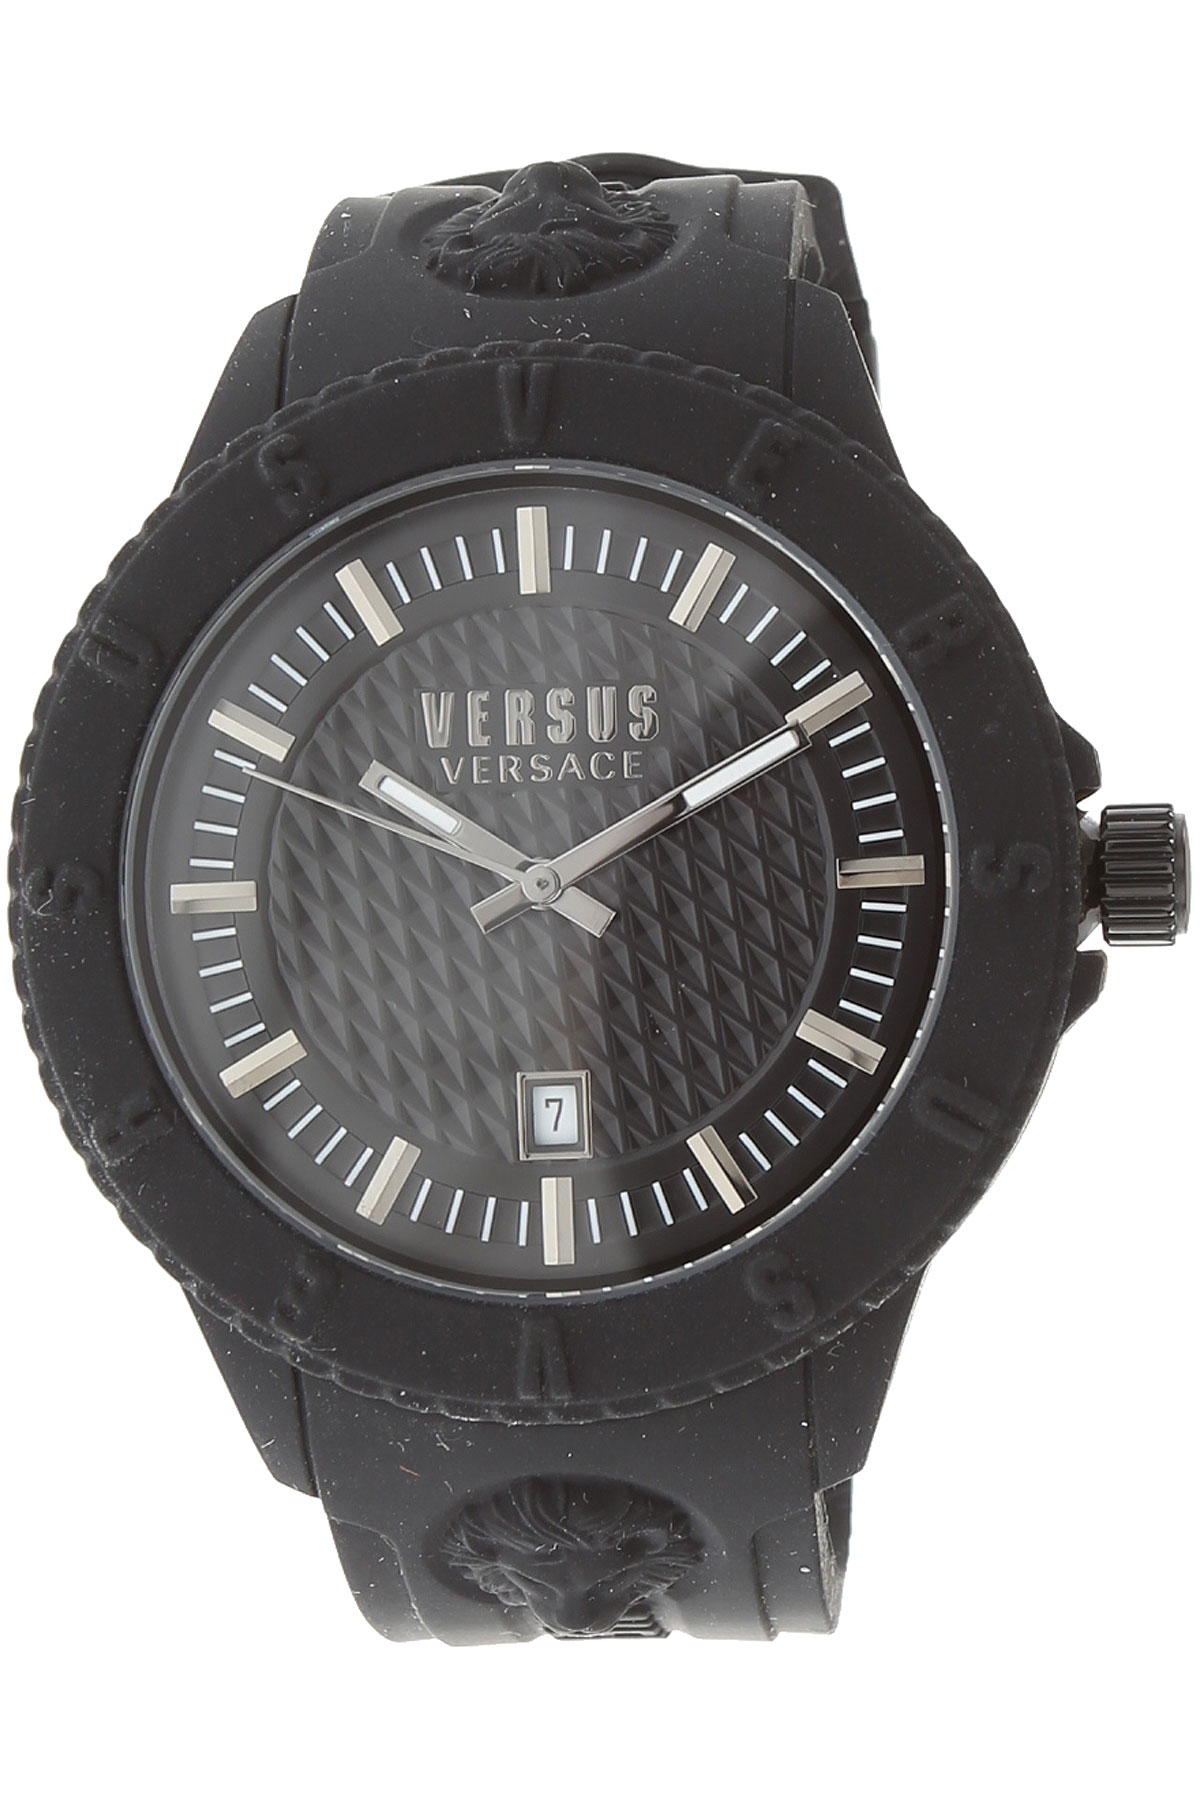 Versace Uhr für Damen, Chronometer, Zeitmesser Günstig im Outlet Sale, Schwarz, Gummi, 2017